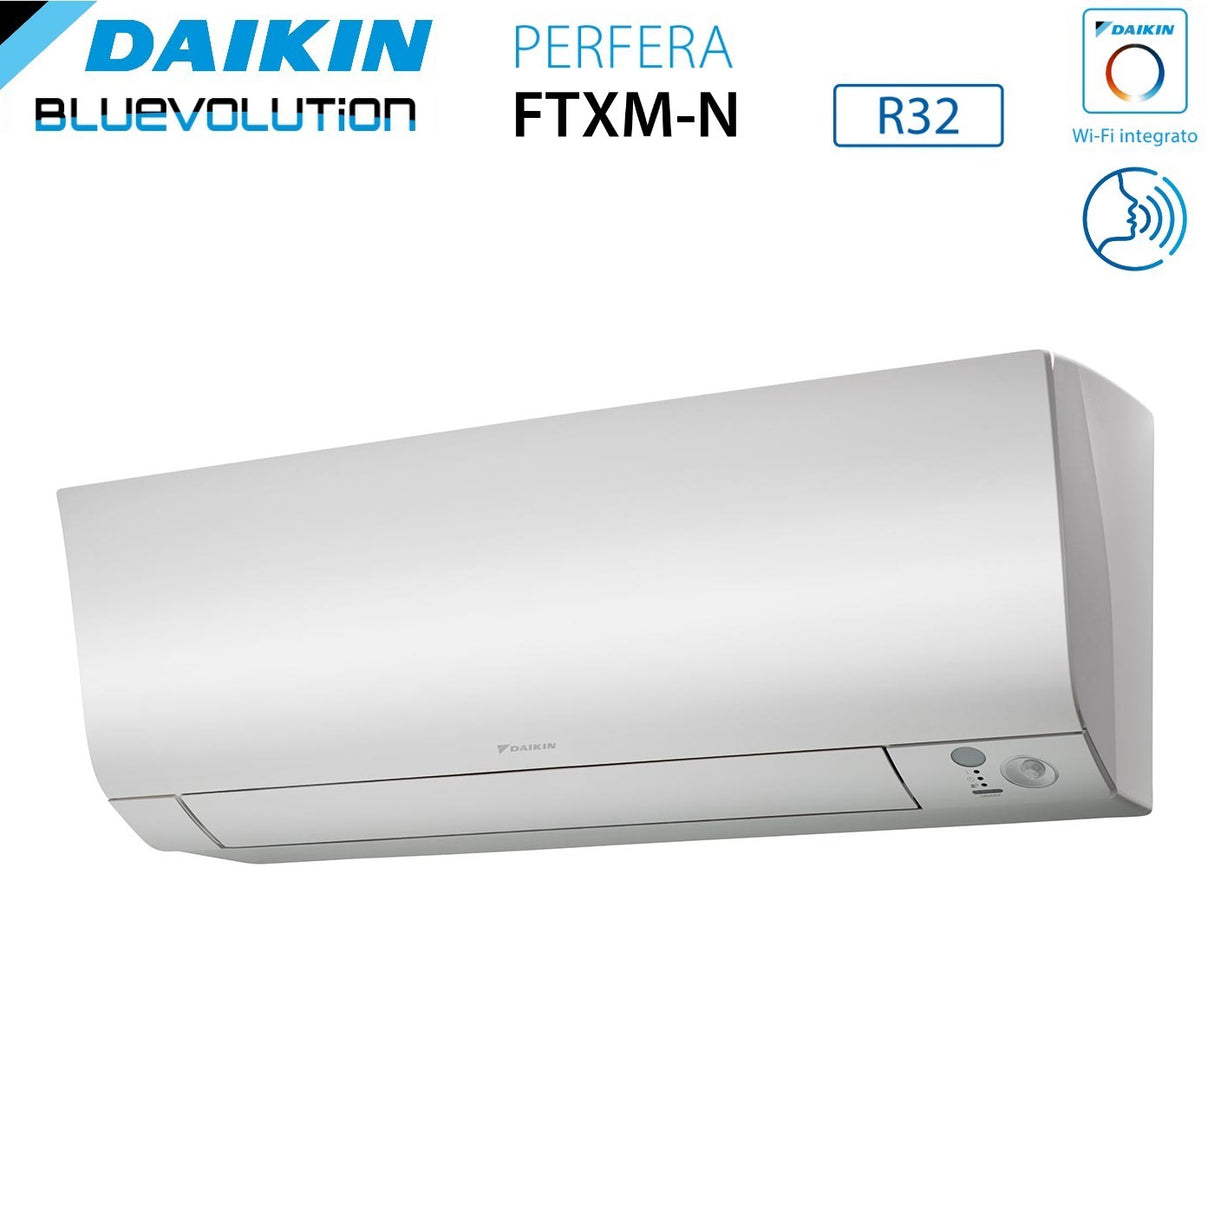 immagine-4-daikin-climatizzatore-condizionatore-daikin-bluevolution-dual-split-inverter-serie-ftxmn-perfera-99-con-2mxm40a-r-32-wi-fi-integrato-90009000-garanzia-italiana-ean-8059657007643